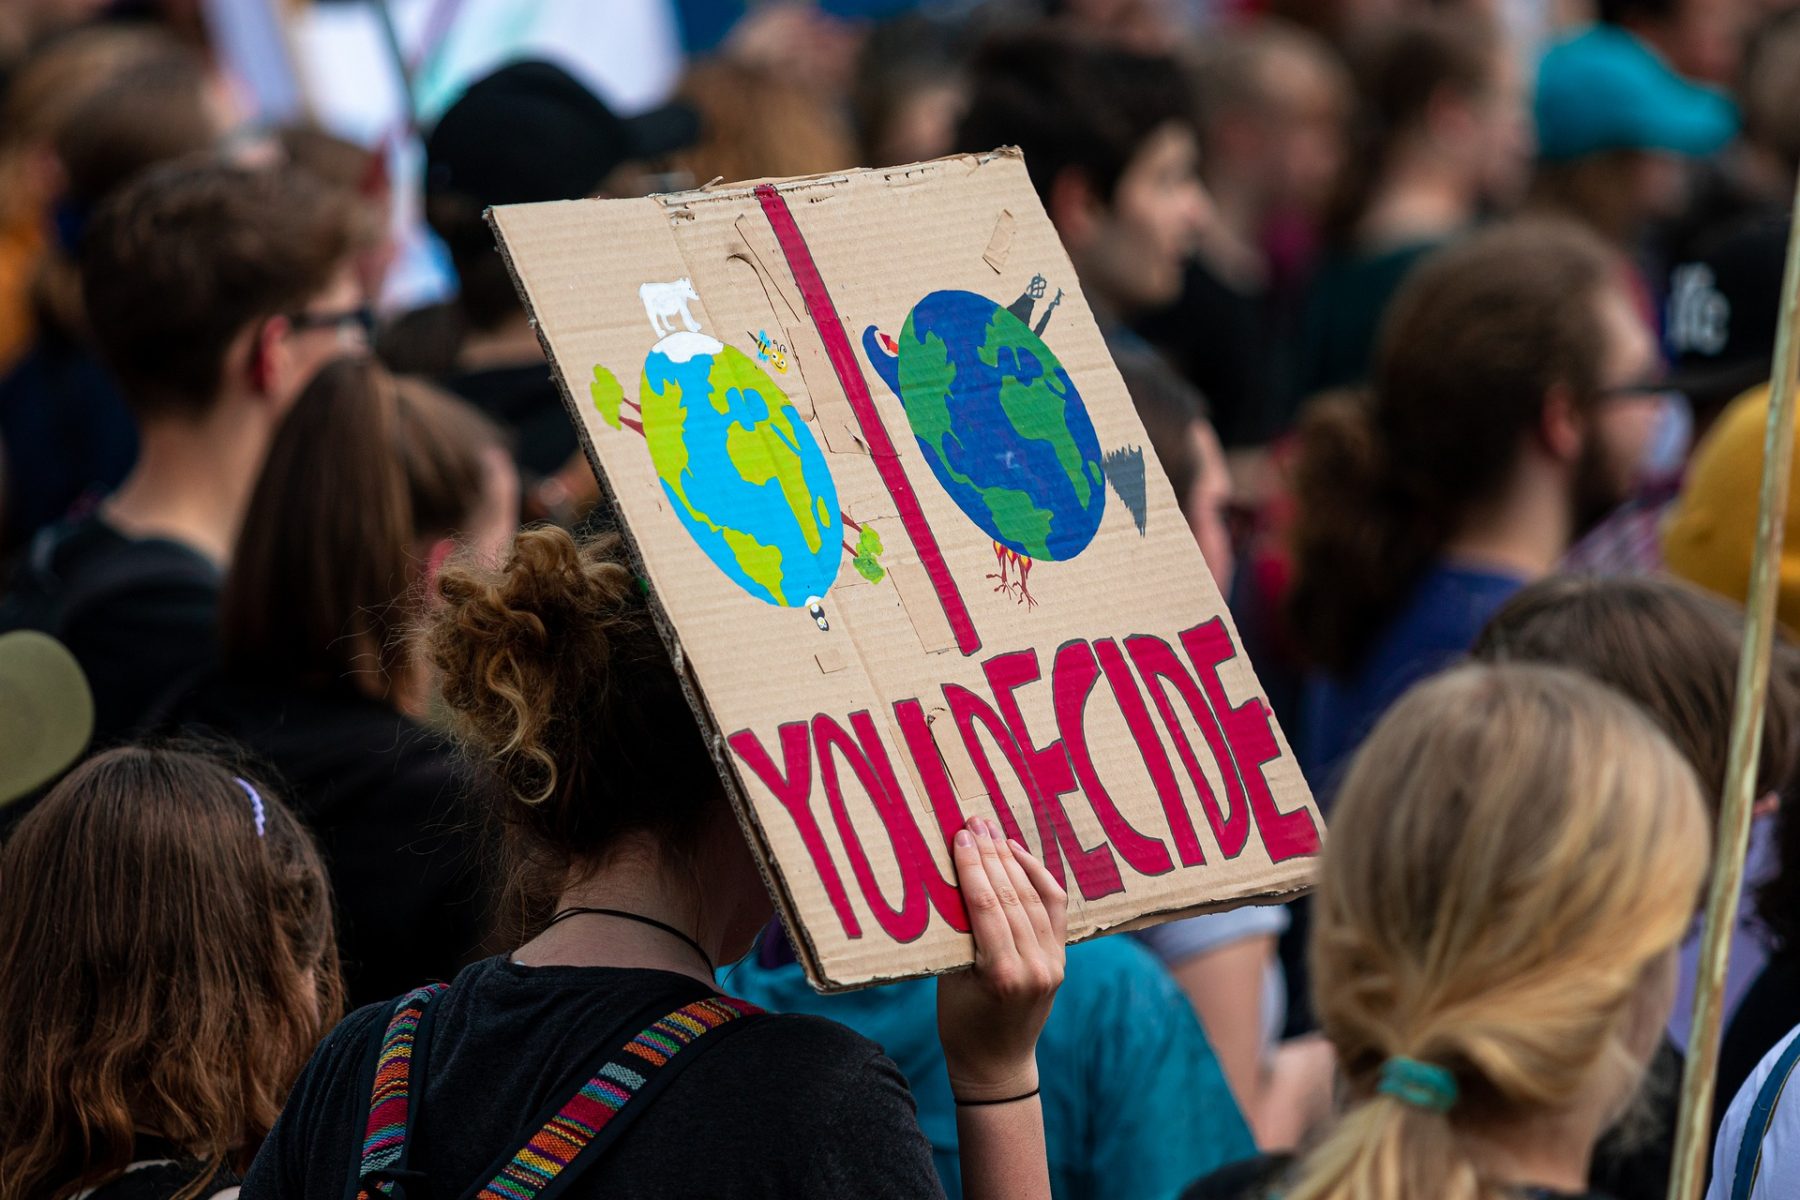 Κλιματική αλλαγή νέοι: Συντετριμμένοι, λυπημένοι, ένοχοι νιώθουν οι νέοι για το κλίμα